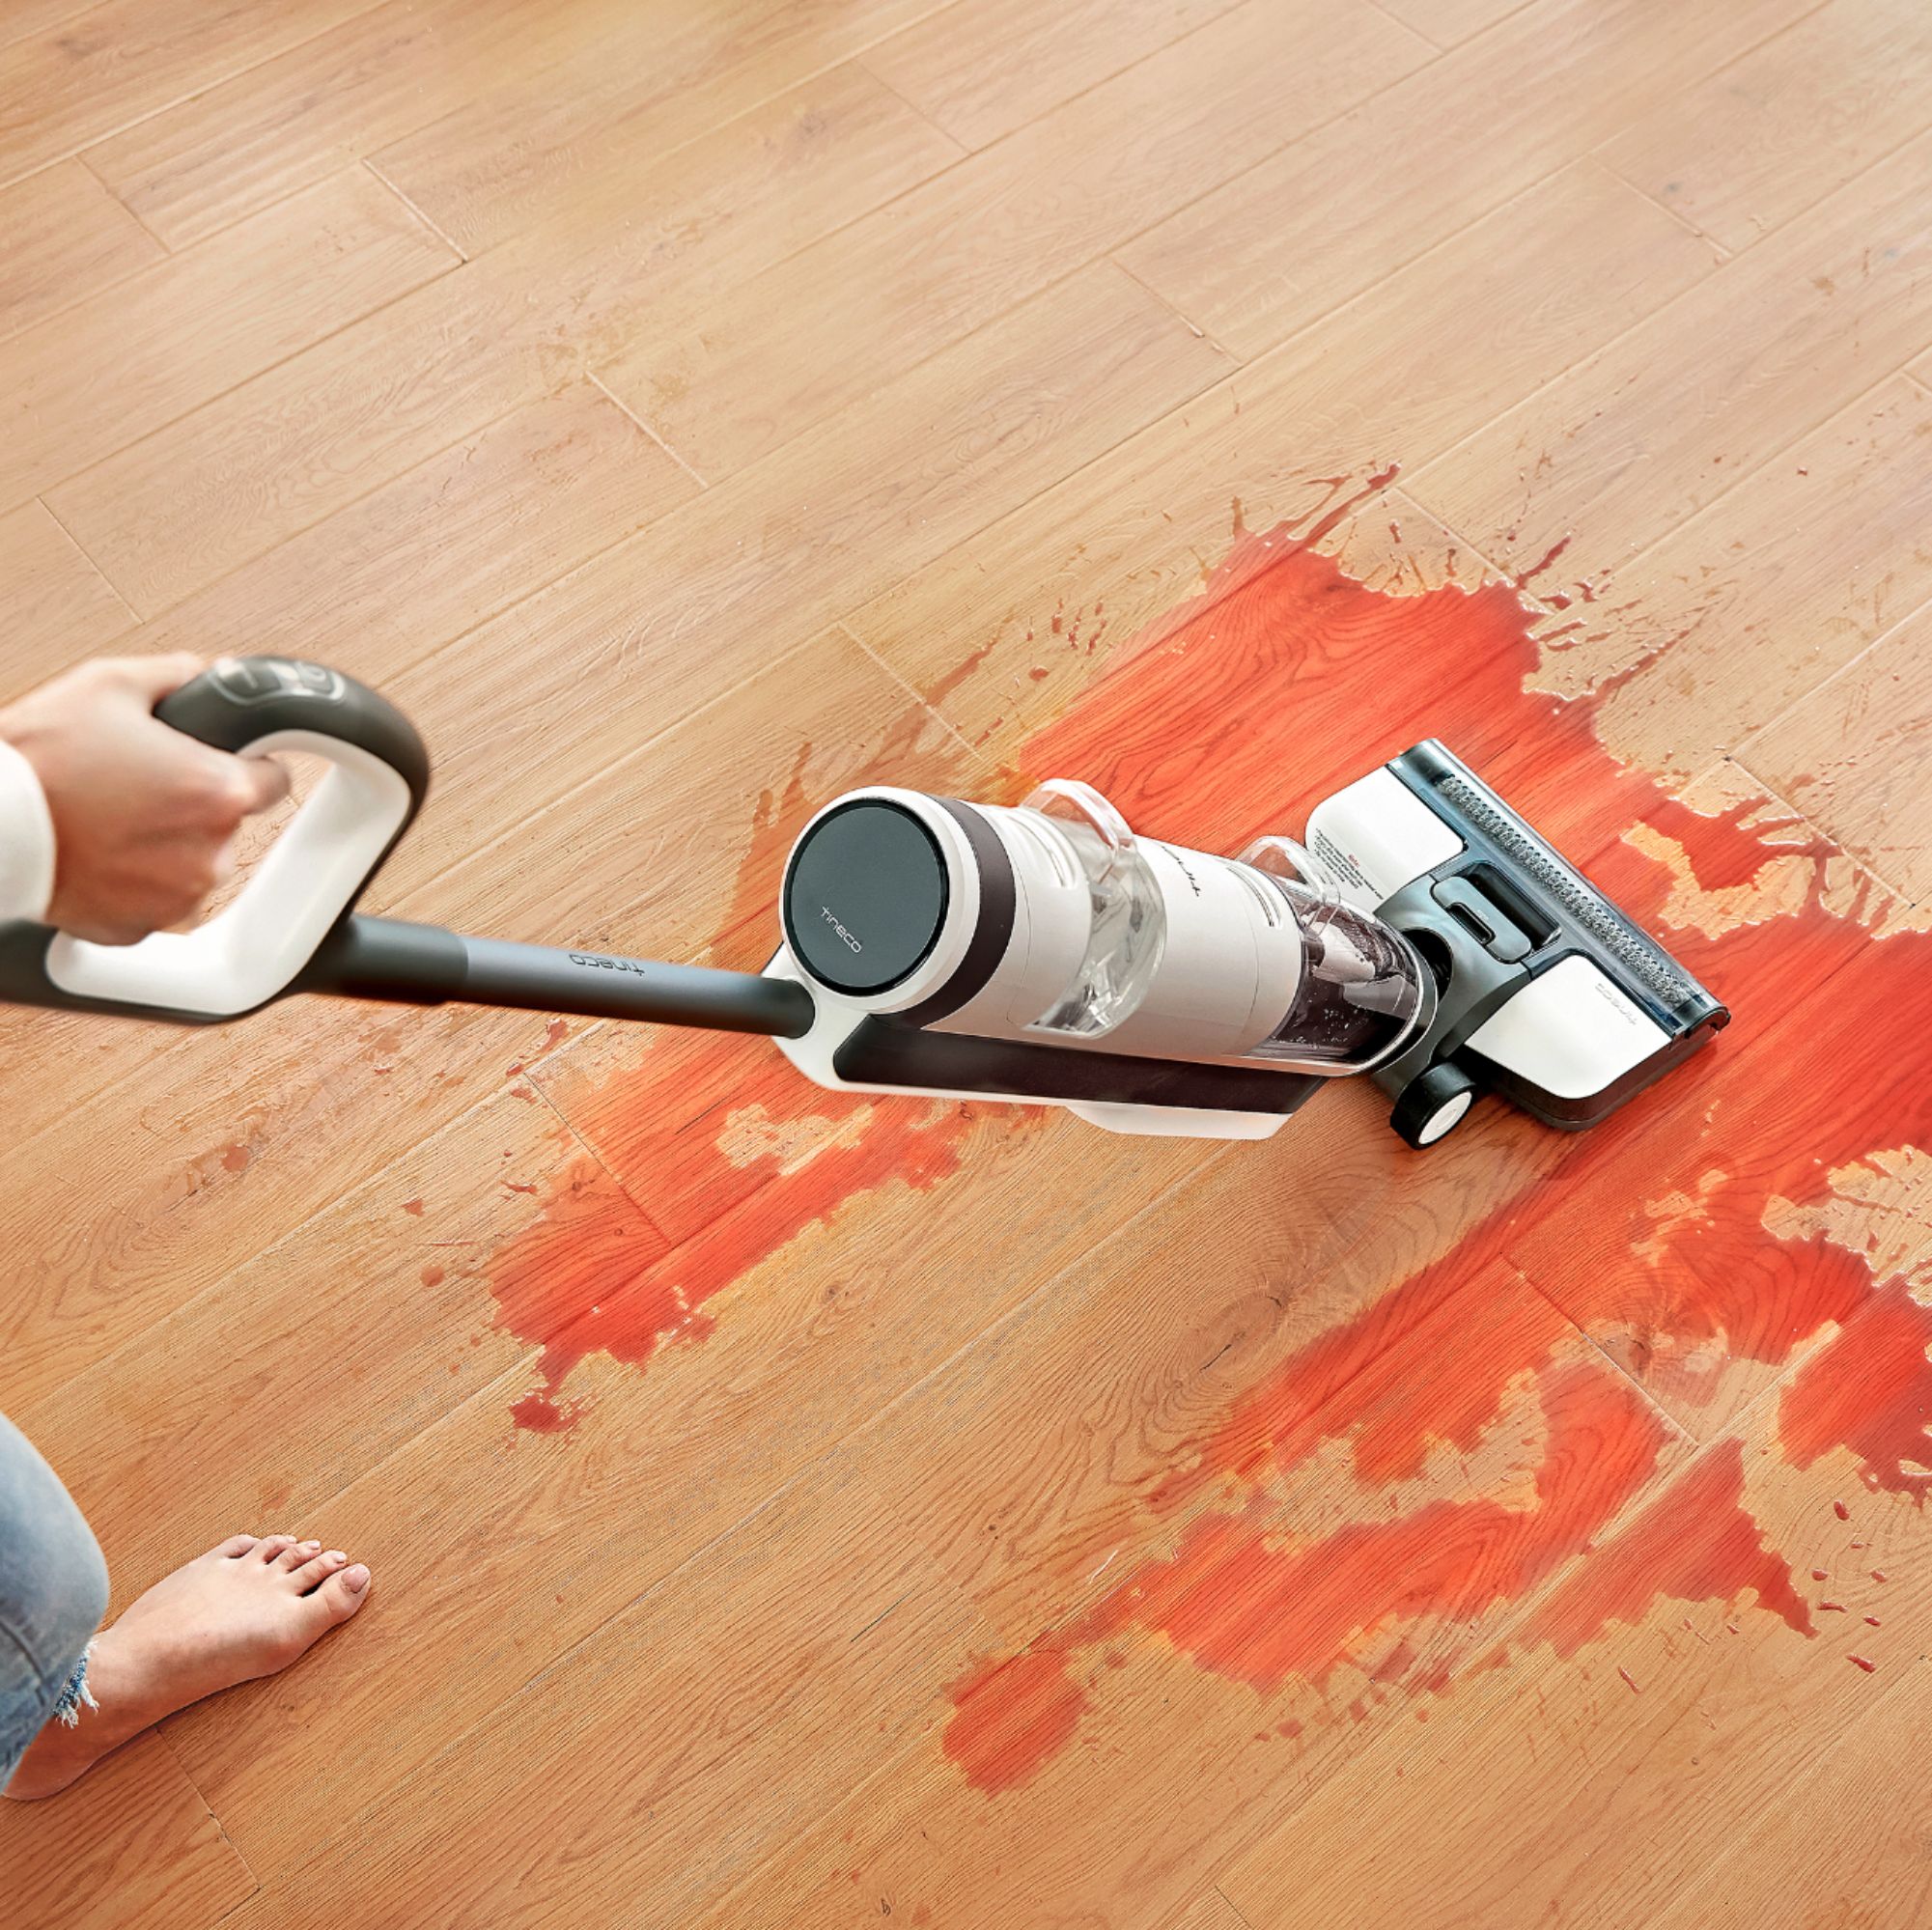 Tineco iFLOOR 3 Breeze Wet Dry Vacuum: Cordless Floor Cleaner & Mop for  Hard Floors 